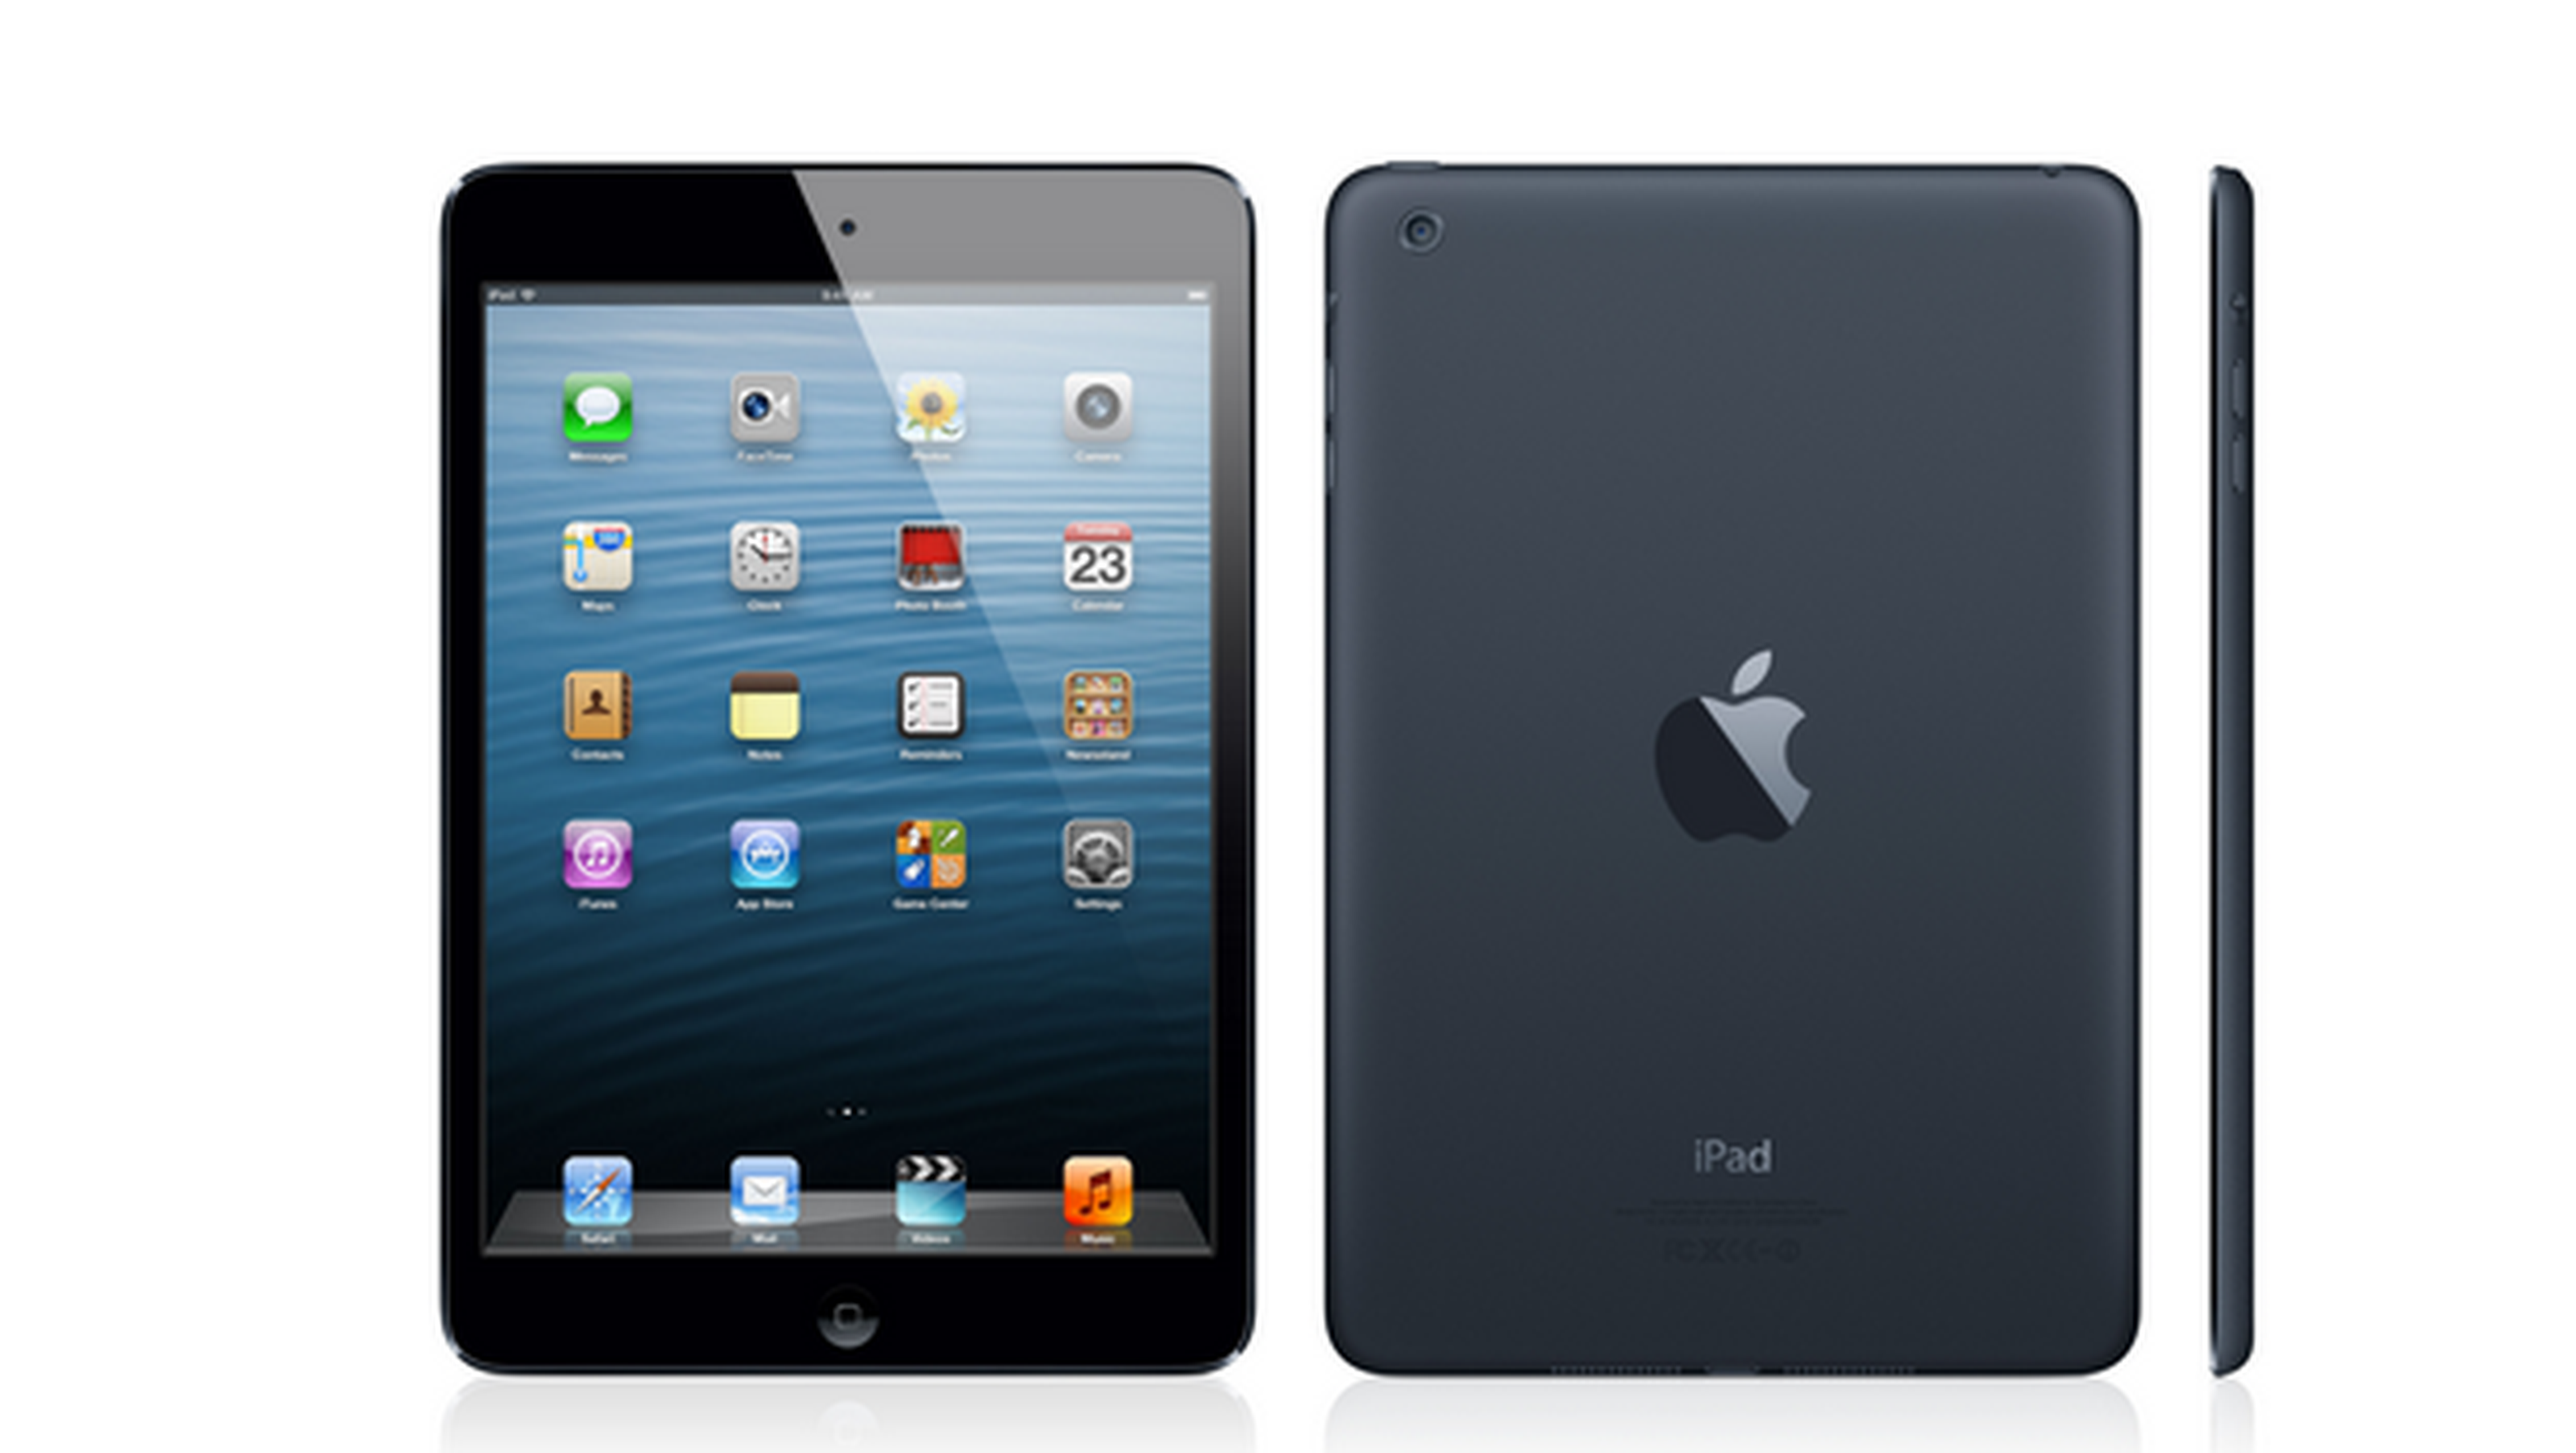 Apple lanza el iPad 4 con pantalla retina al precio de 379 €